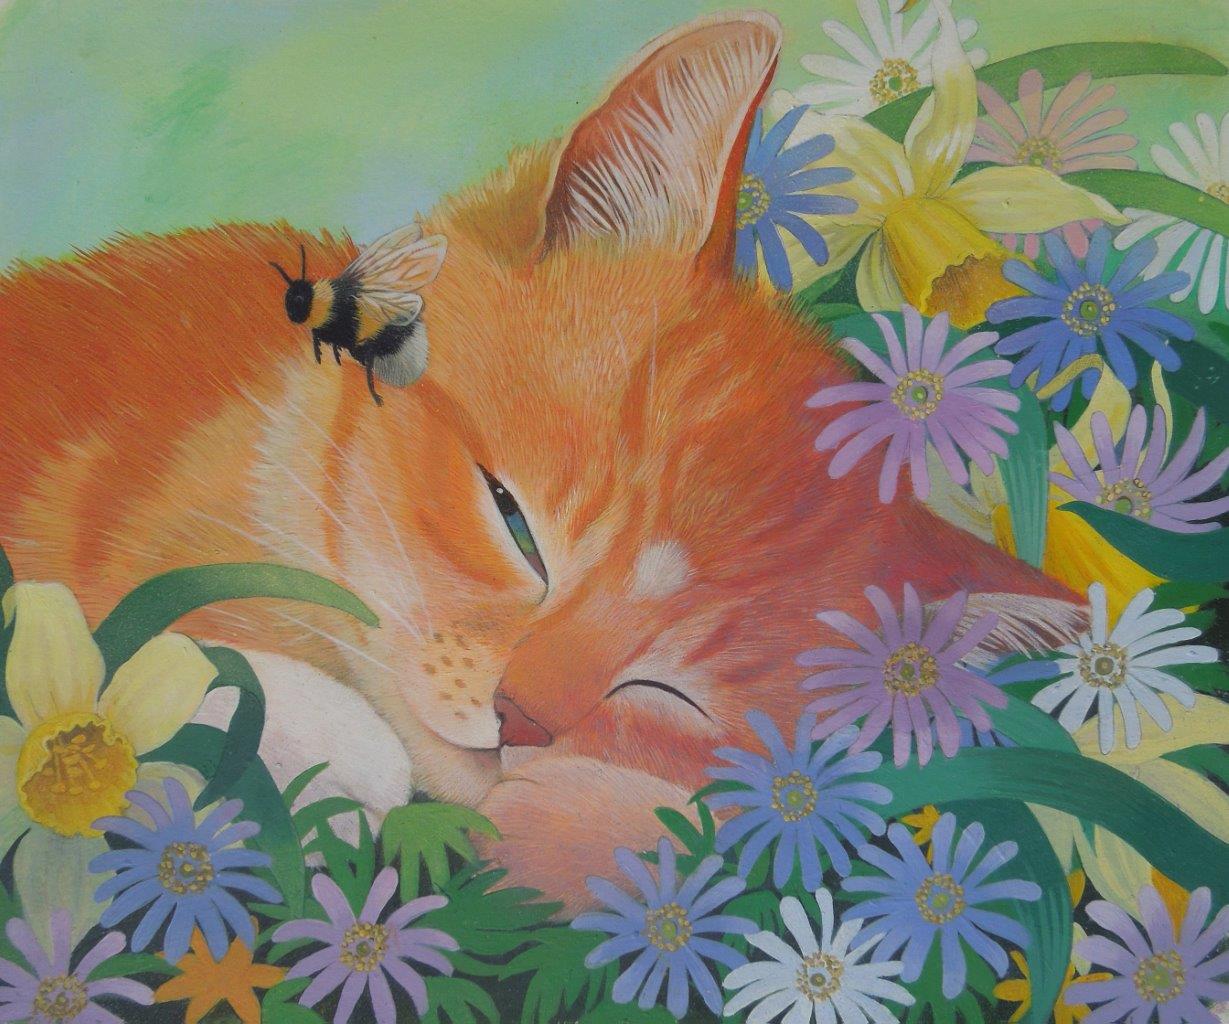 sleep tight ginger kitten and bee illustration